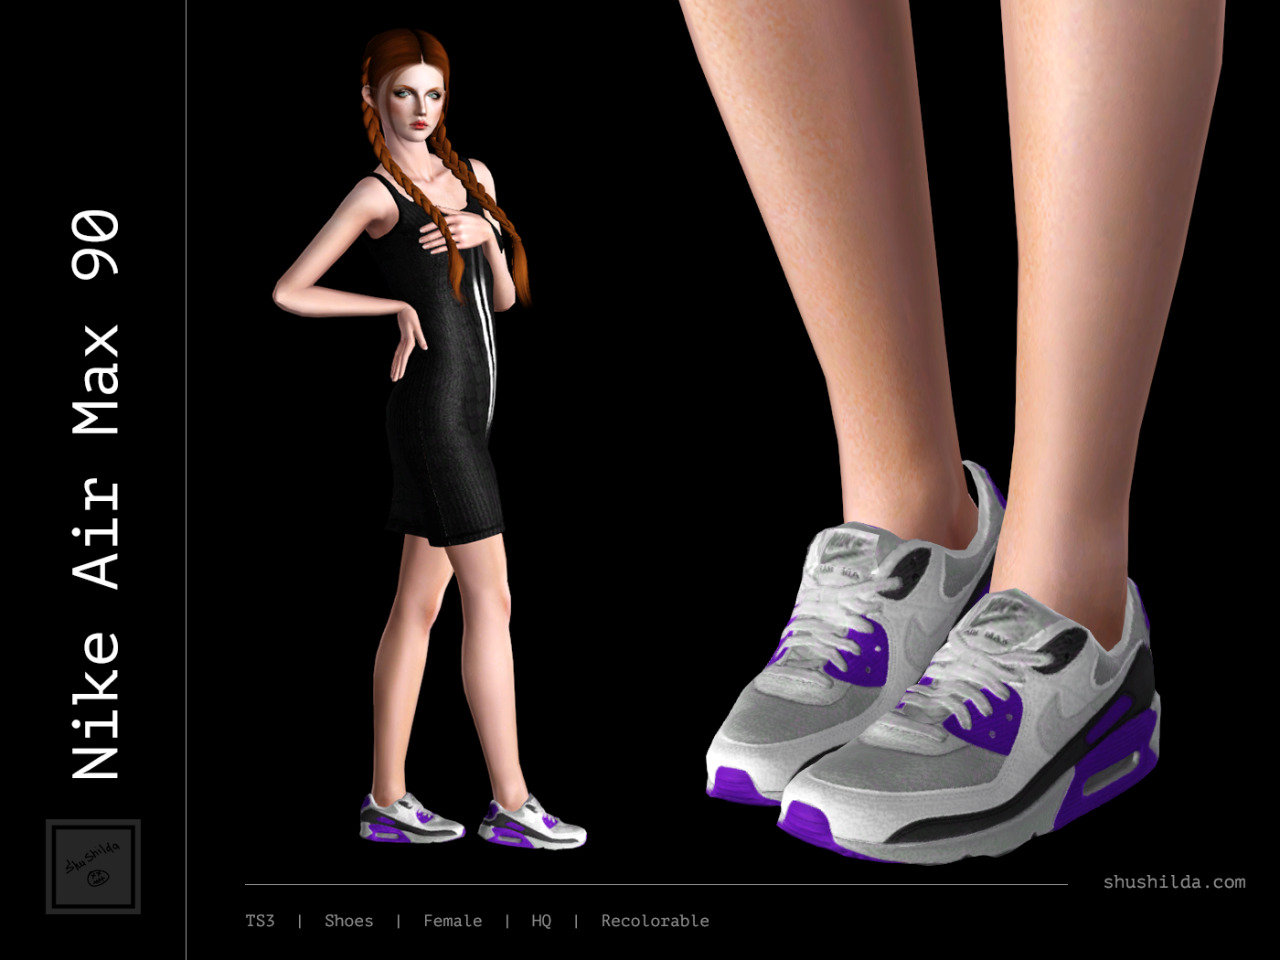 Shushilda sims — Nike Air Max 90 TS3 | Female | HQ-texture |...